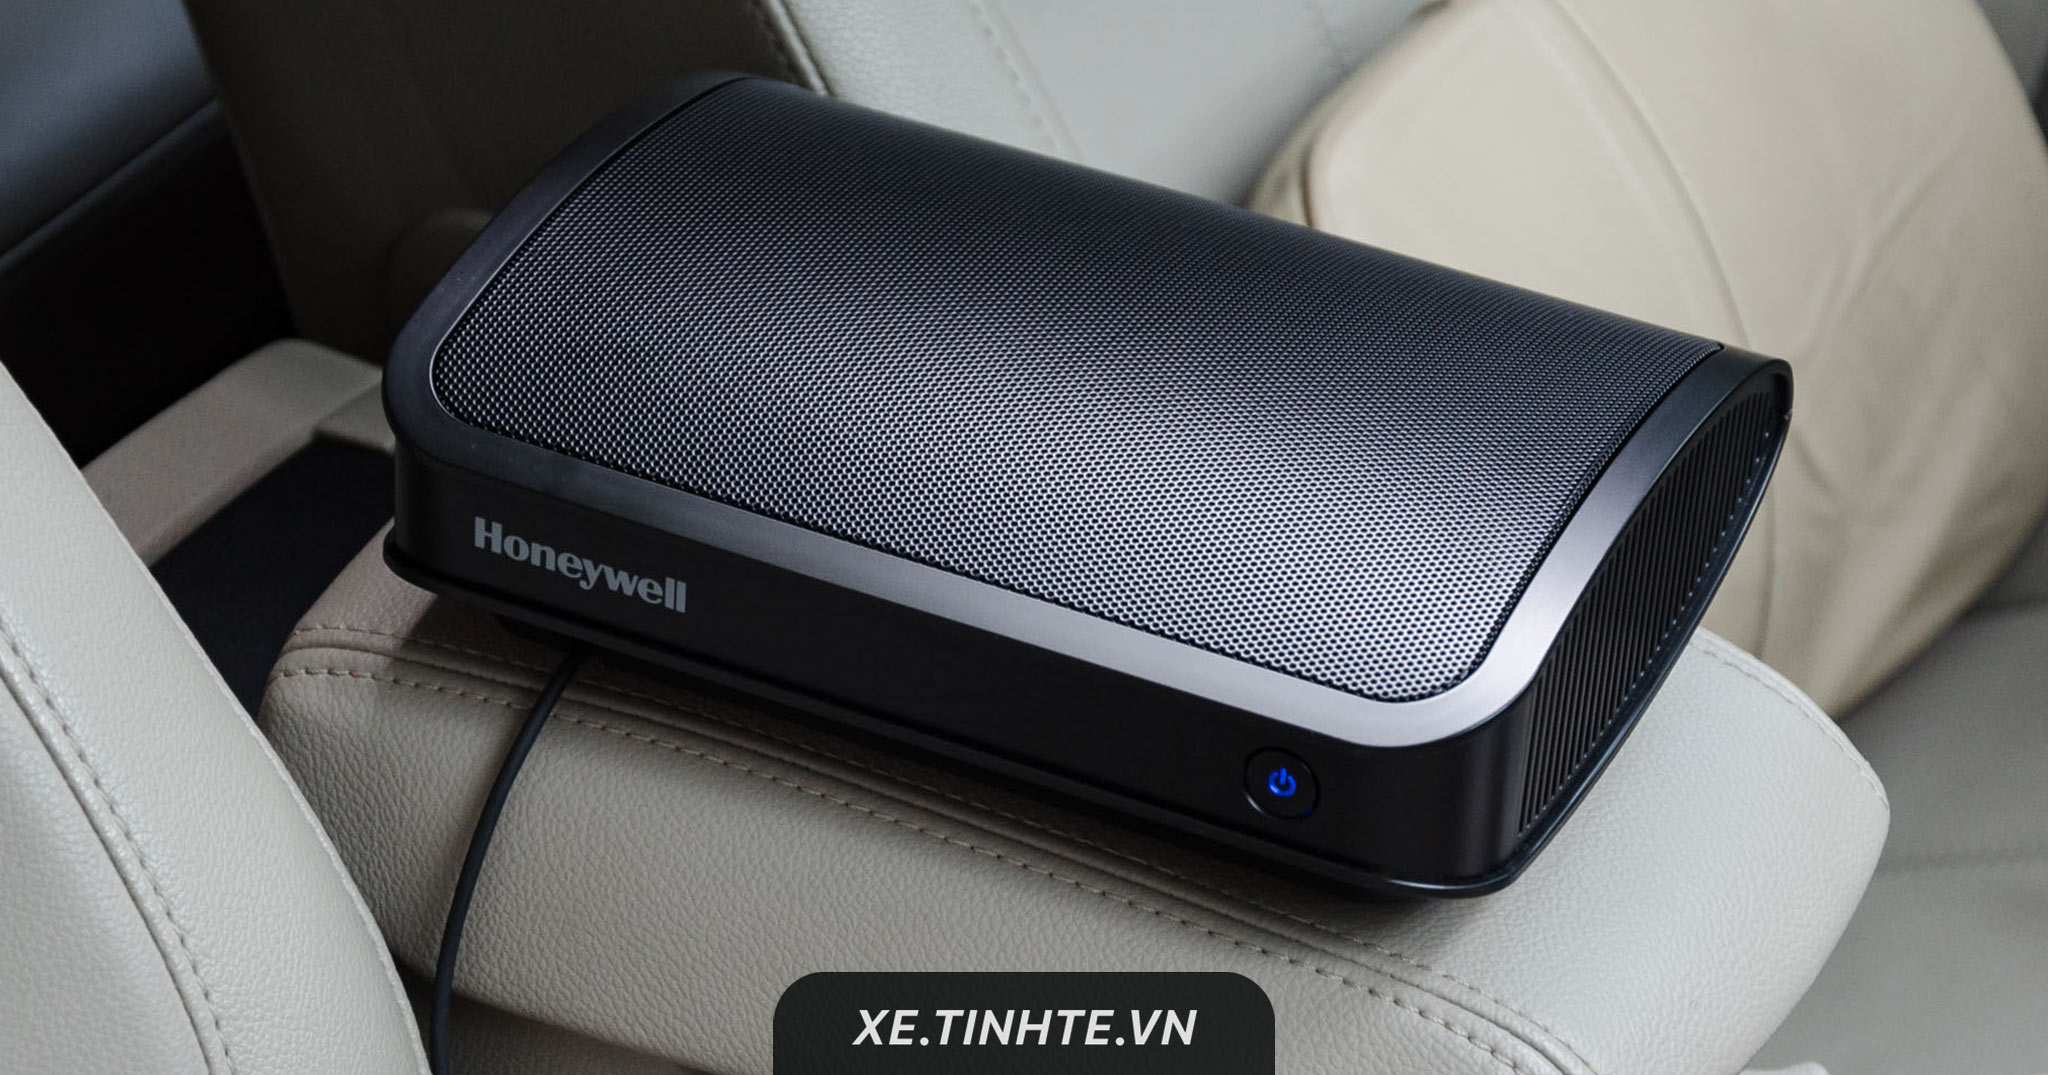 Trên tay máy lọc không khí Honeywell cho ô tô: khử mùi tốt, dễ sử dụng và tự vệ sinh thay màng lọc